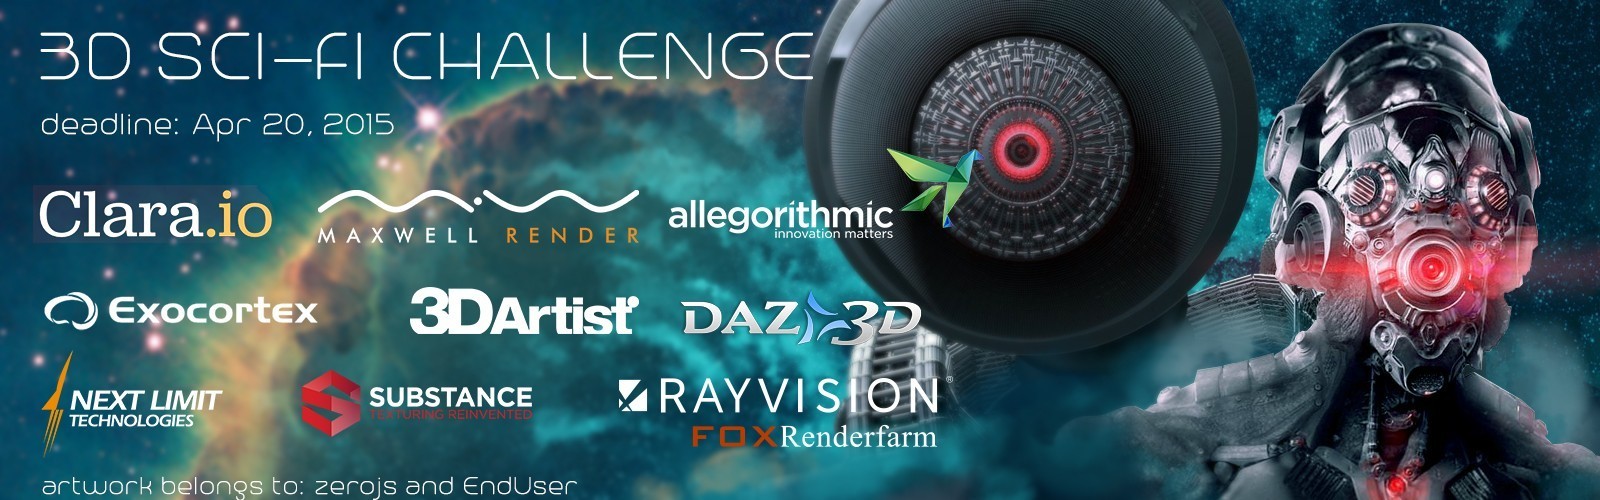 瑞云Rayvision渲染助力CGtrader 3D科幻竞赛——有胆，你就来战！